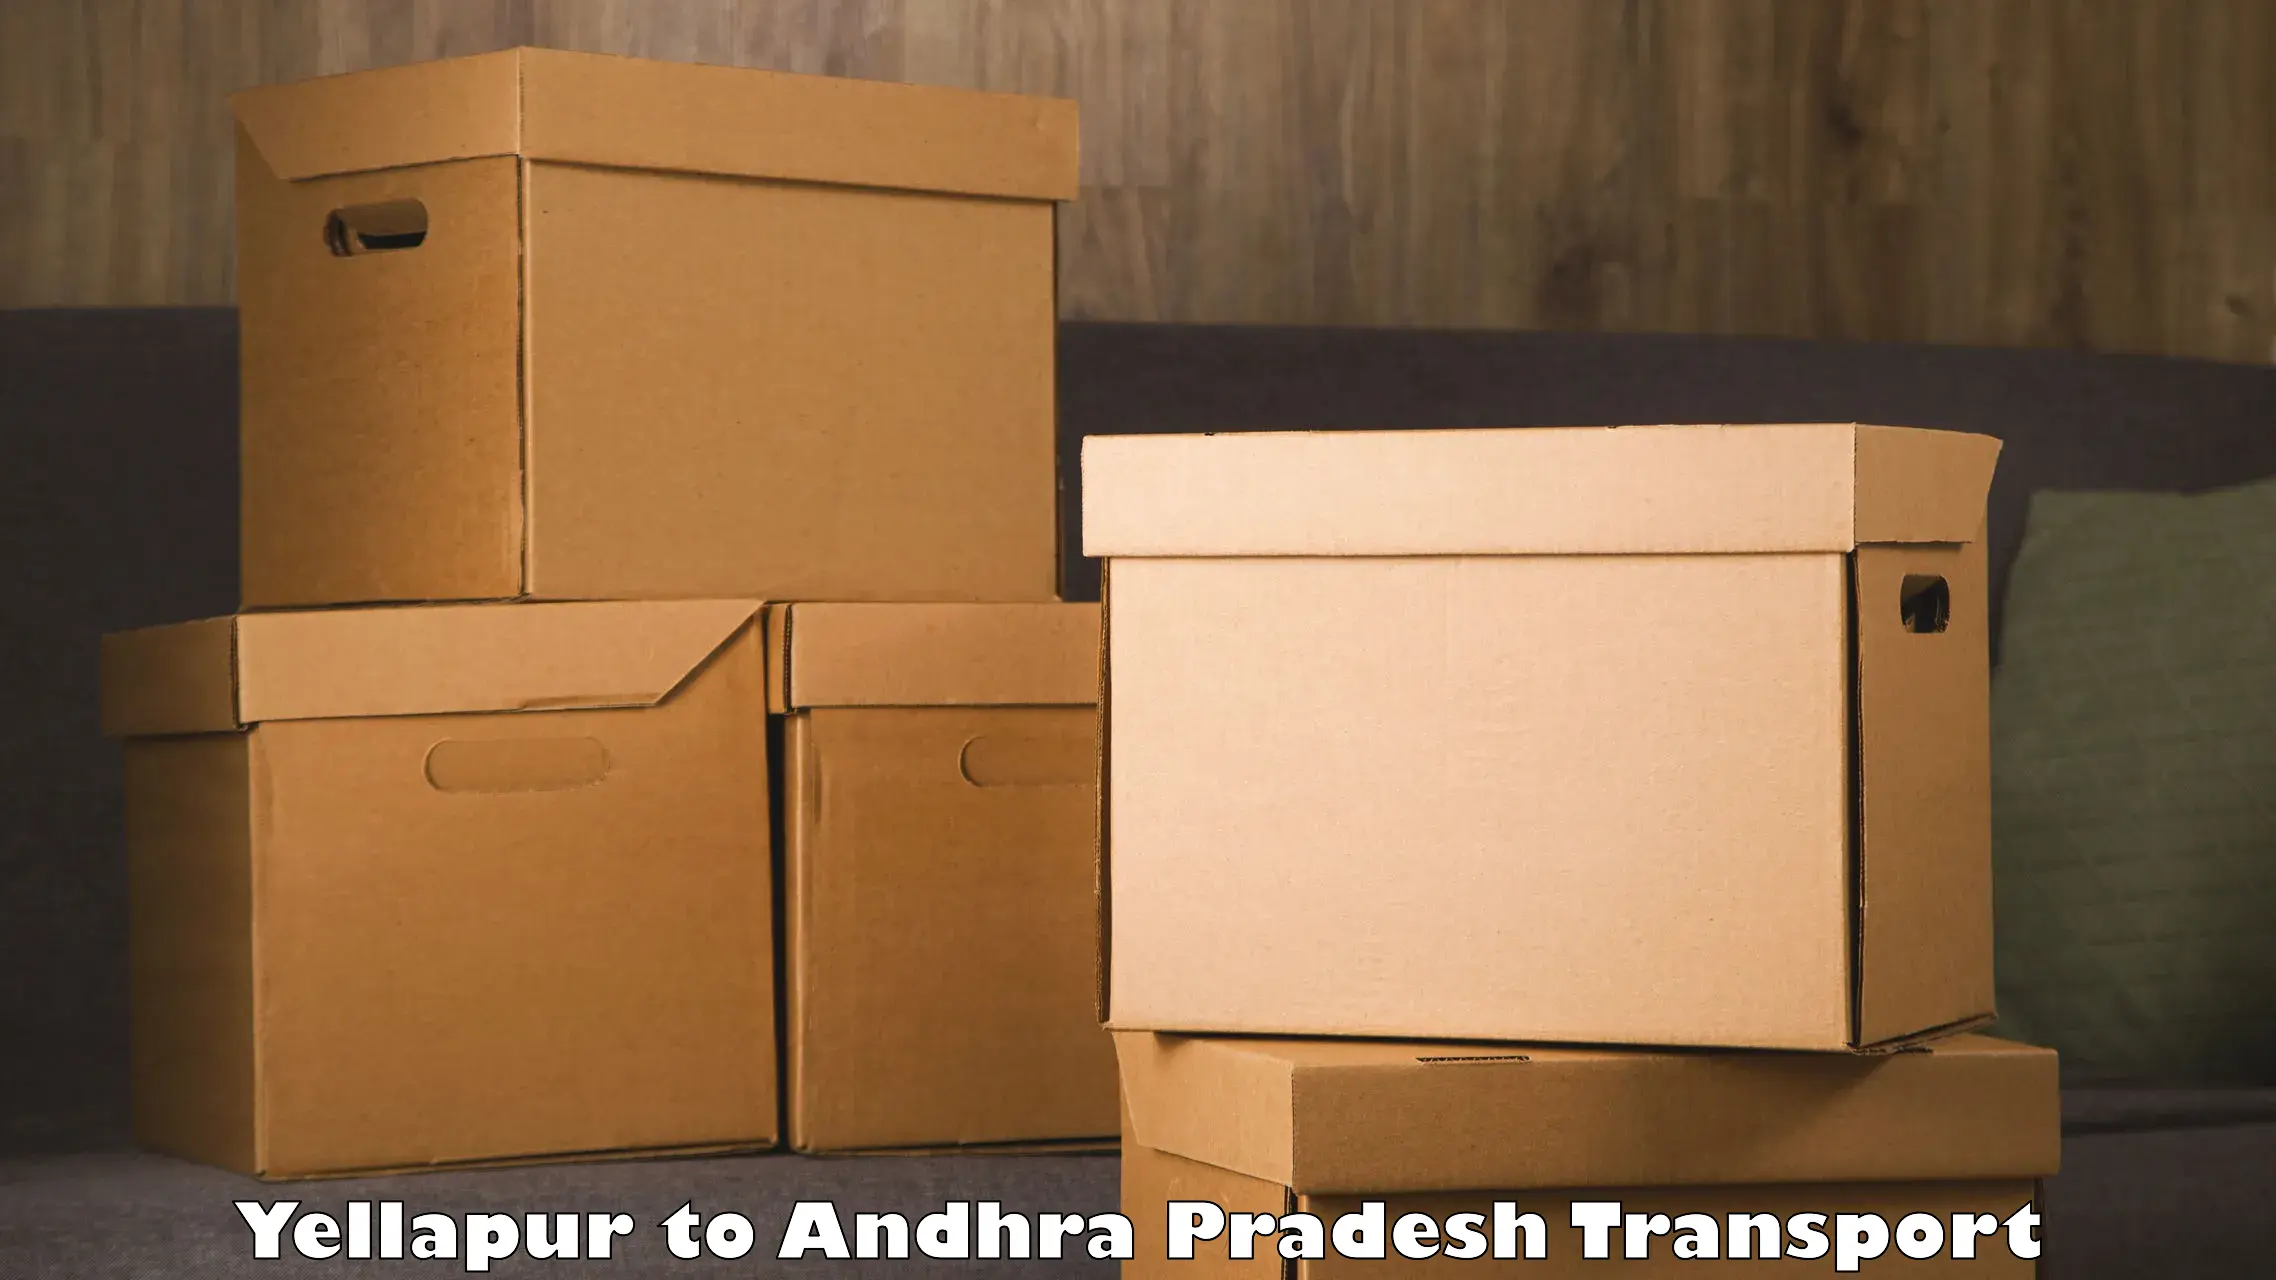 India truck logistics services in Yellapur to Puttur Tirupati